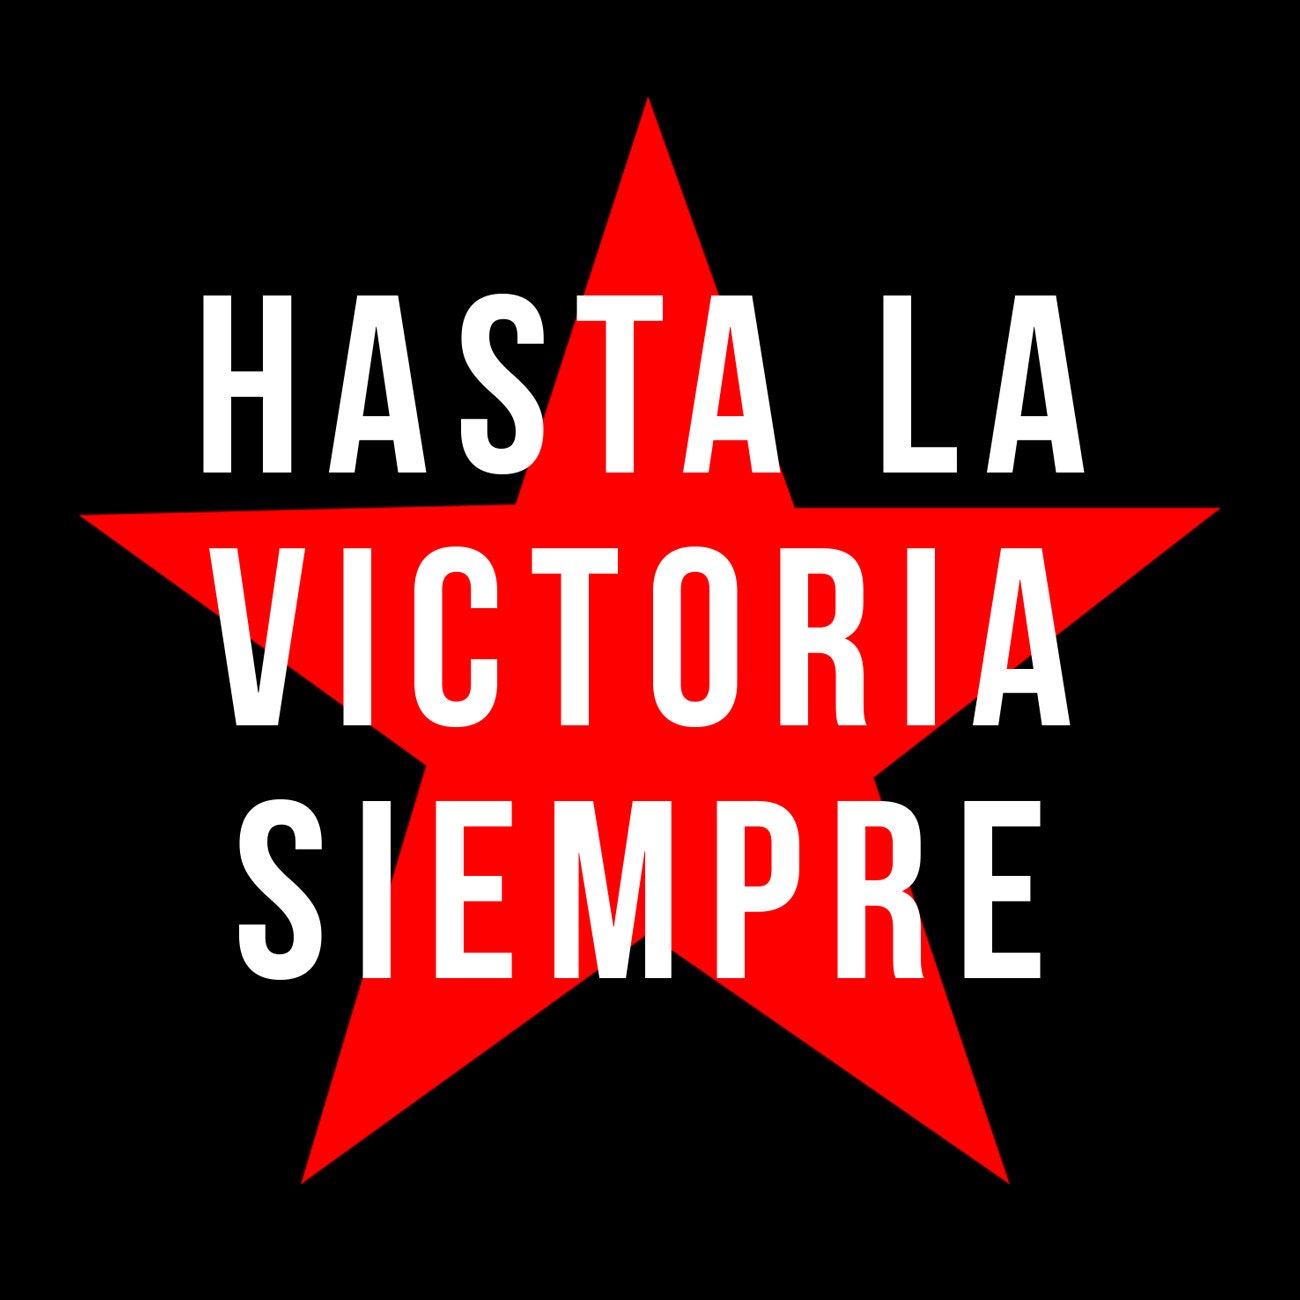 Hasta La Victoria Siempre Cuba Slogan Classic Round Sticker Feb 21 2017  #junkydotcom #zazzle